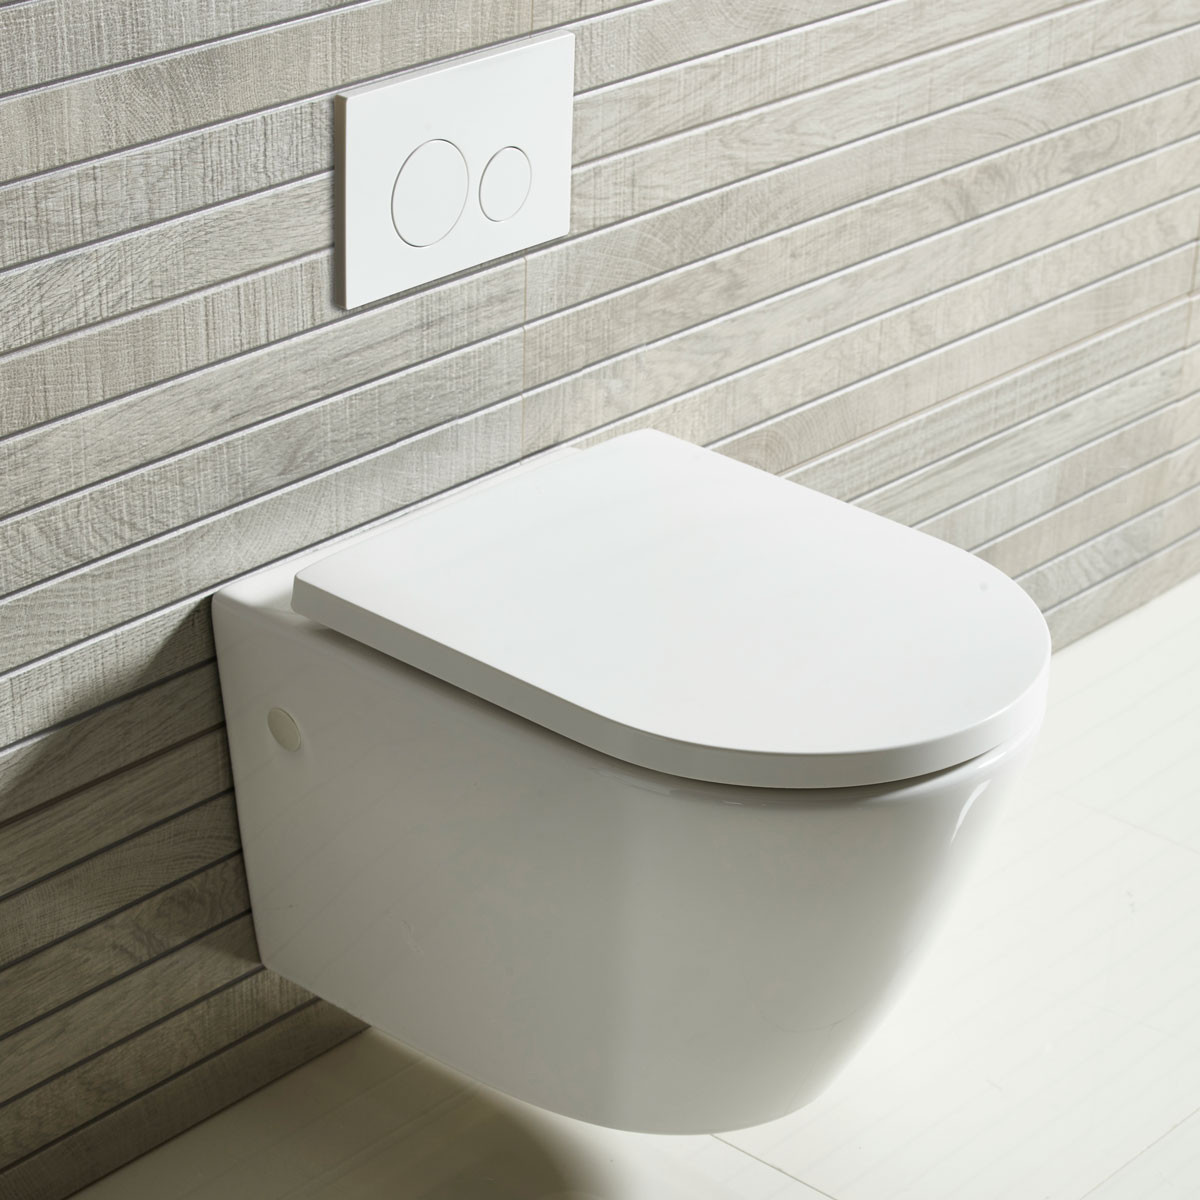 Yksinkertainen analyysi seinään kiinnitettävien wc-istuimien ominaisuuksista